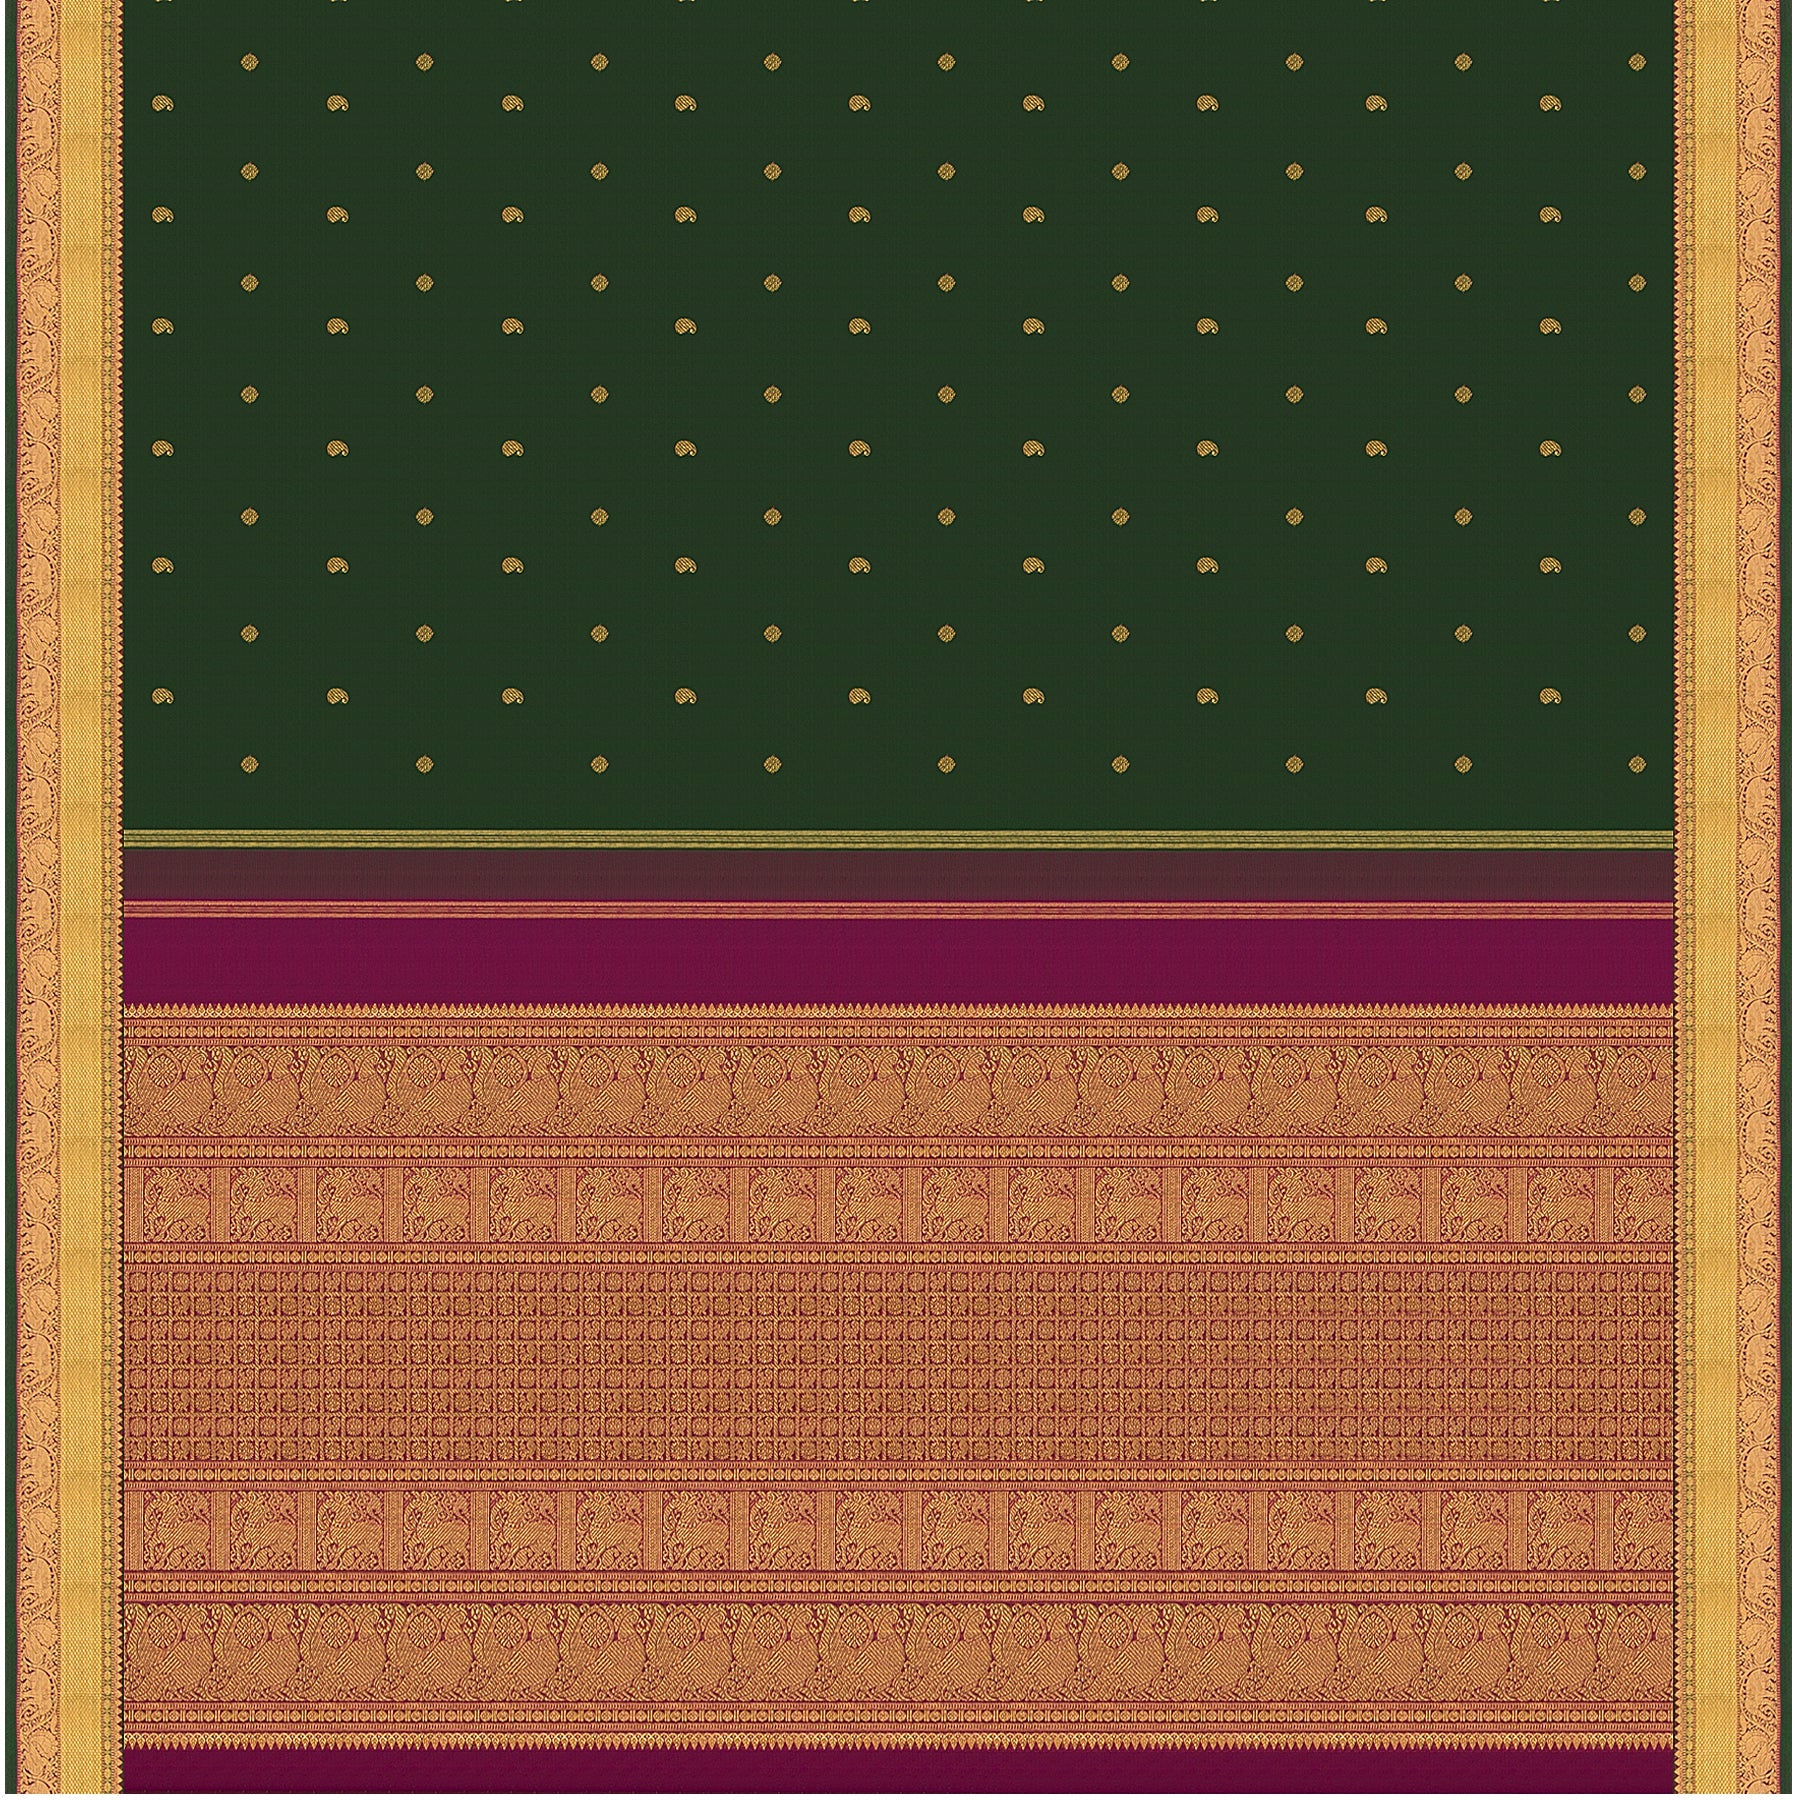 Kanakavalli Kanjivaram Silk Sari 23-110-HS001-03833 - Full View